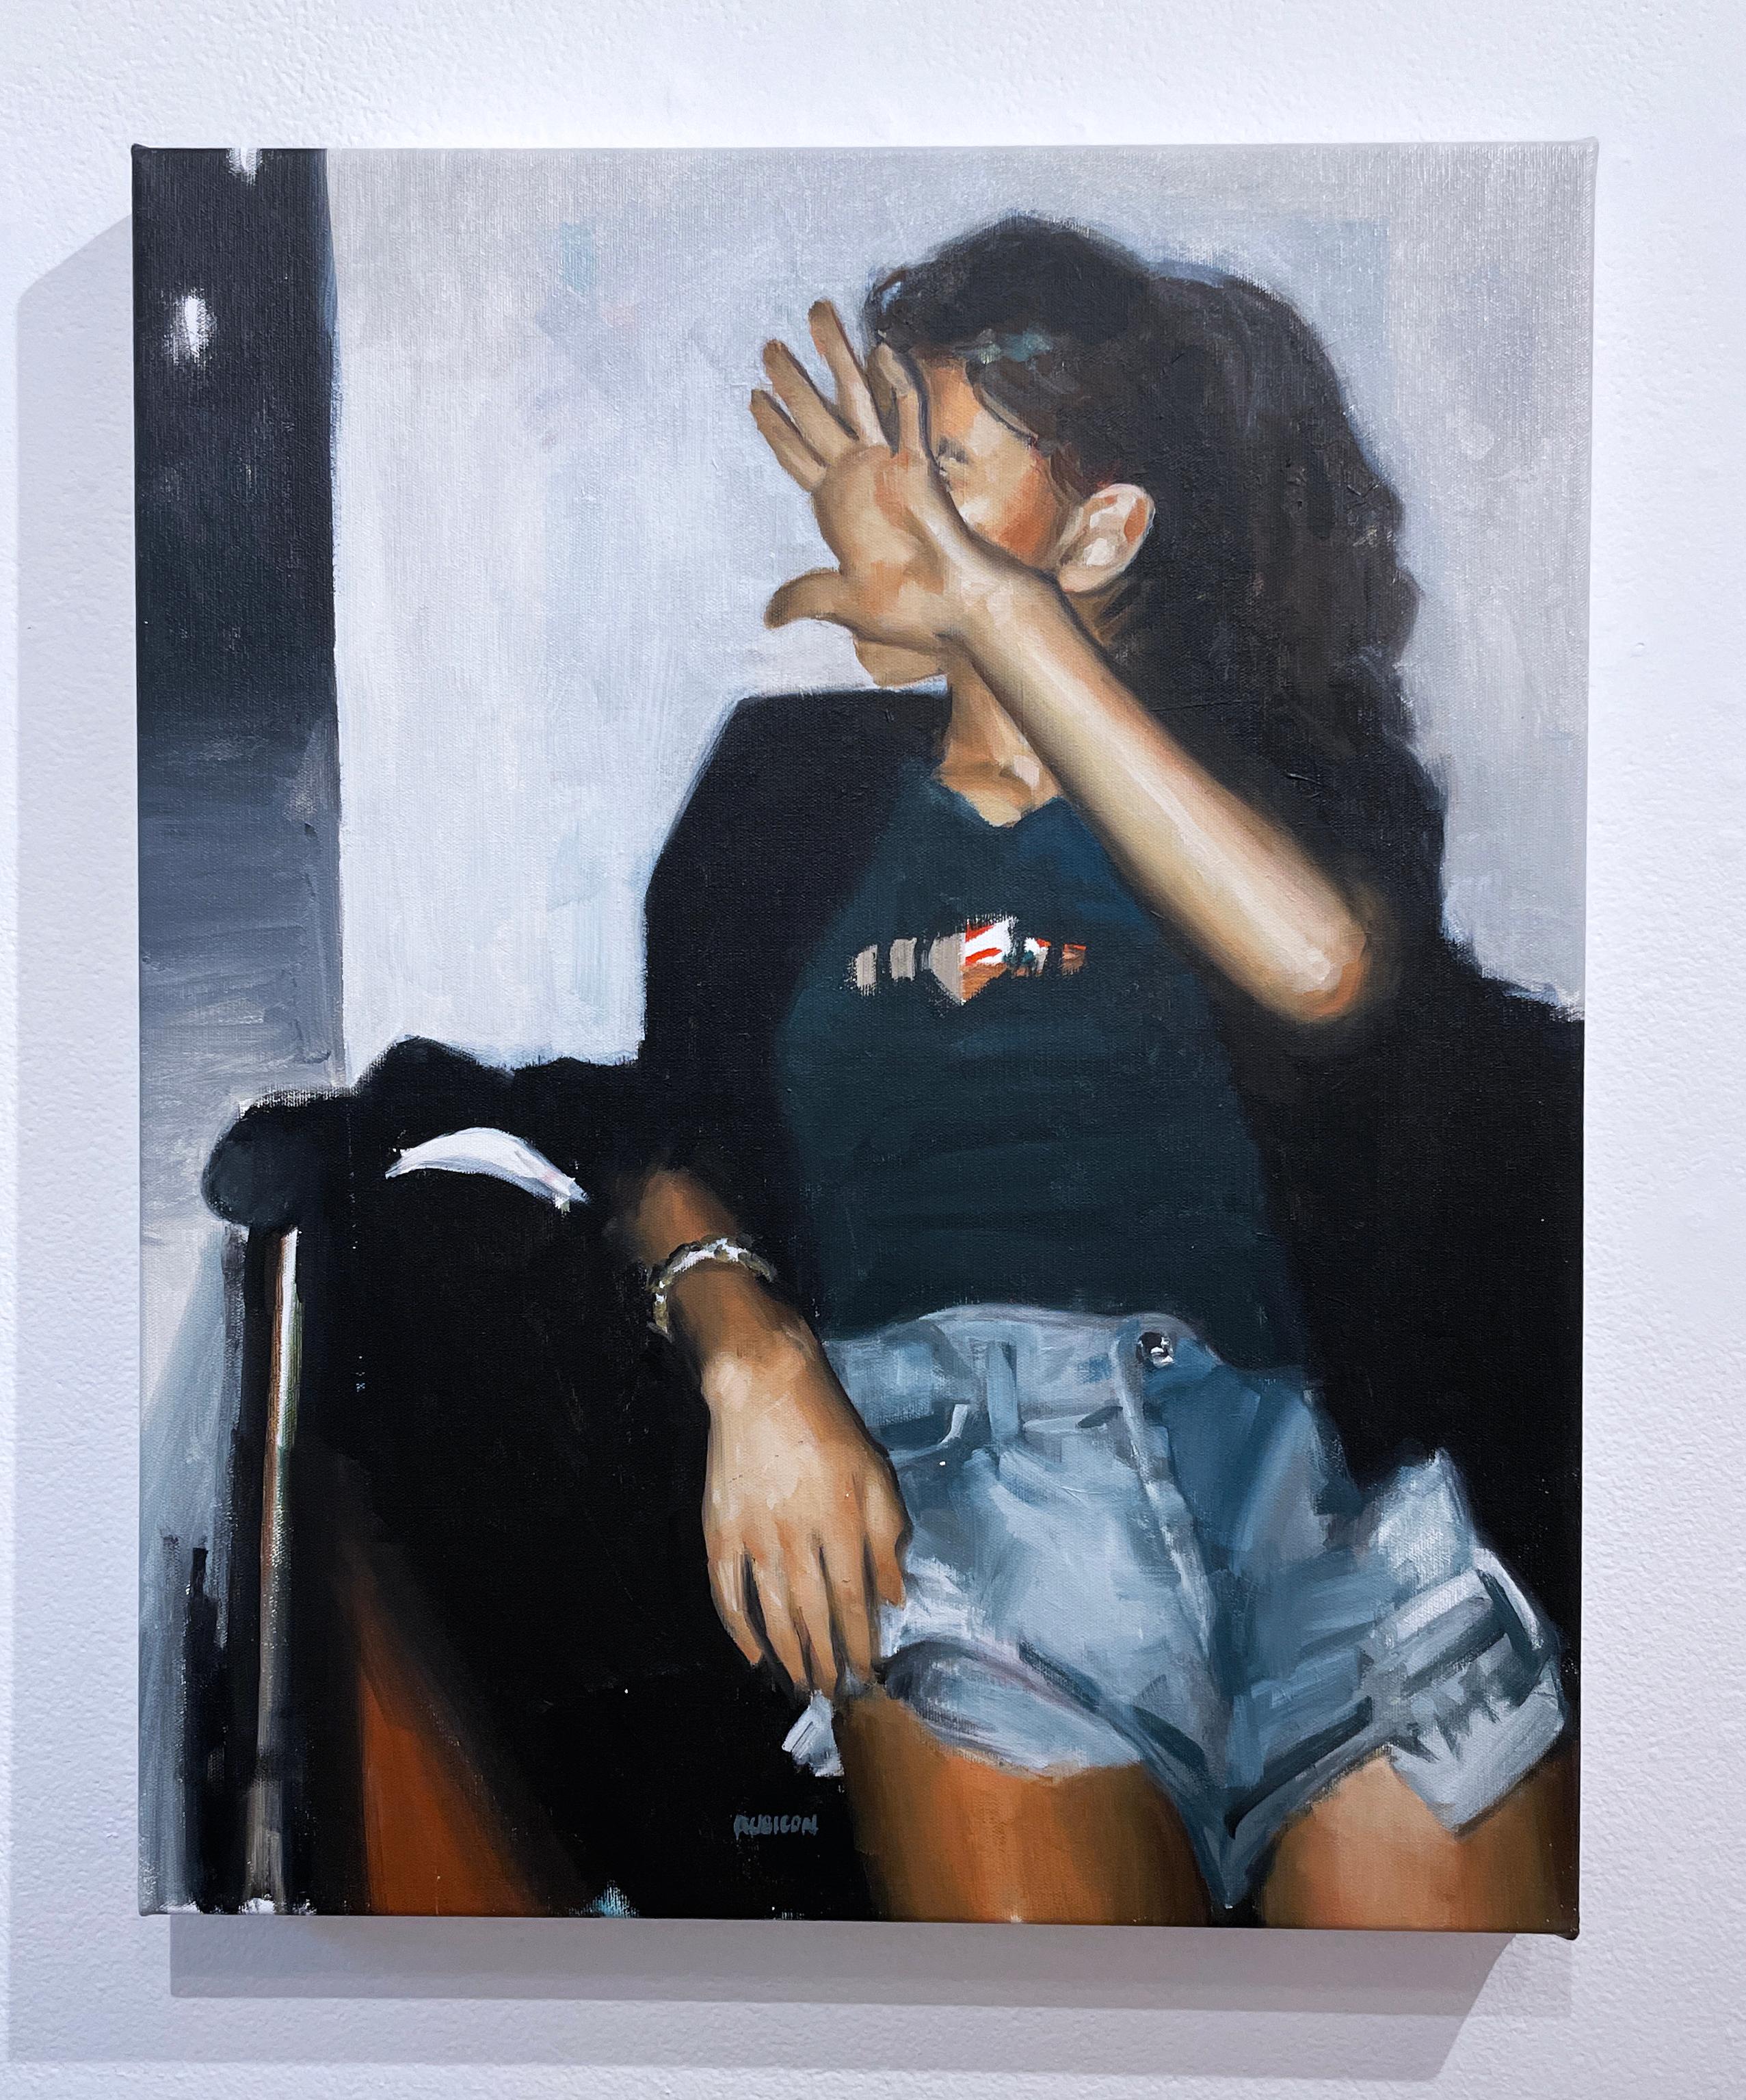 No Flash (2022) huile sur toile, figurative, cliché de femme, visage caché à la main  - Contemporain Painting par RU8ICON1